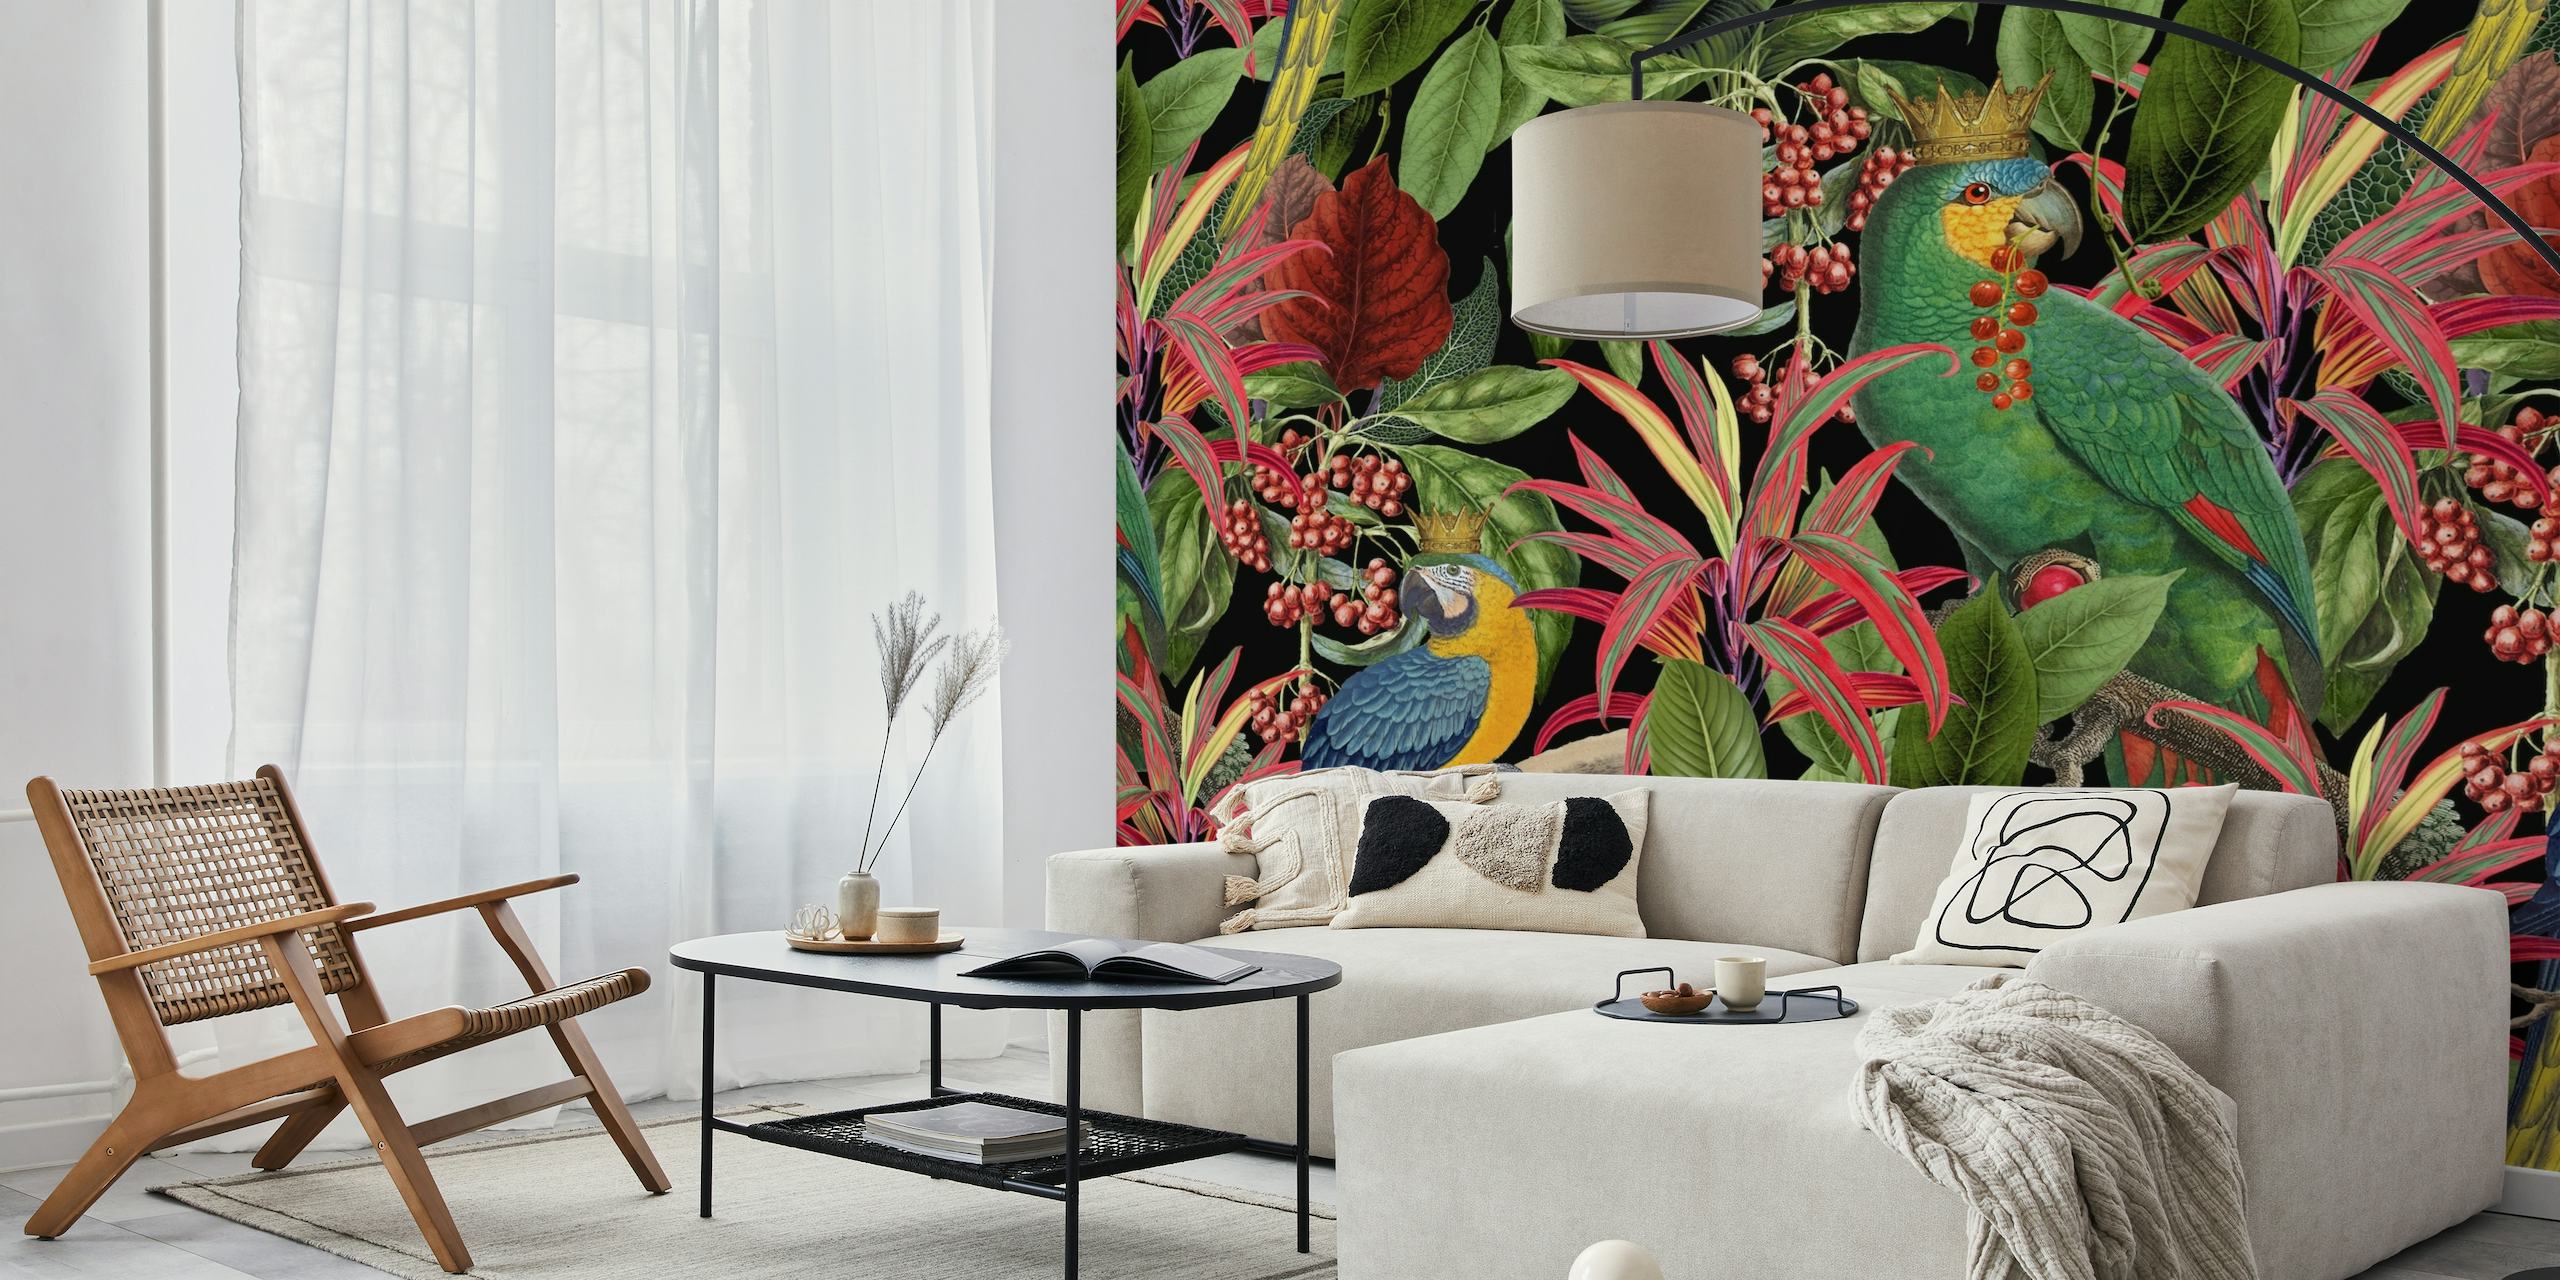 Kleurrijke muurschildering met papegaaienthema in een tropische bladeromgeving